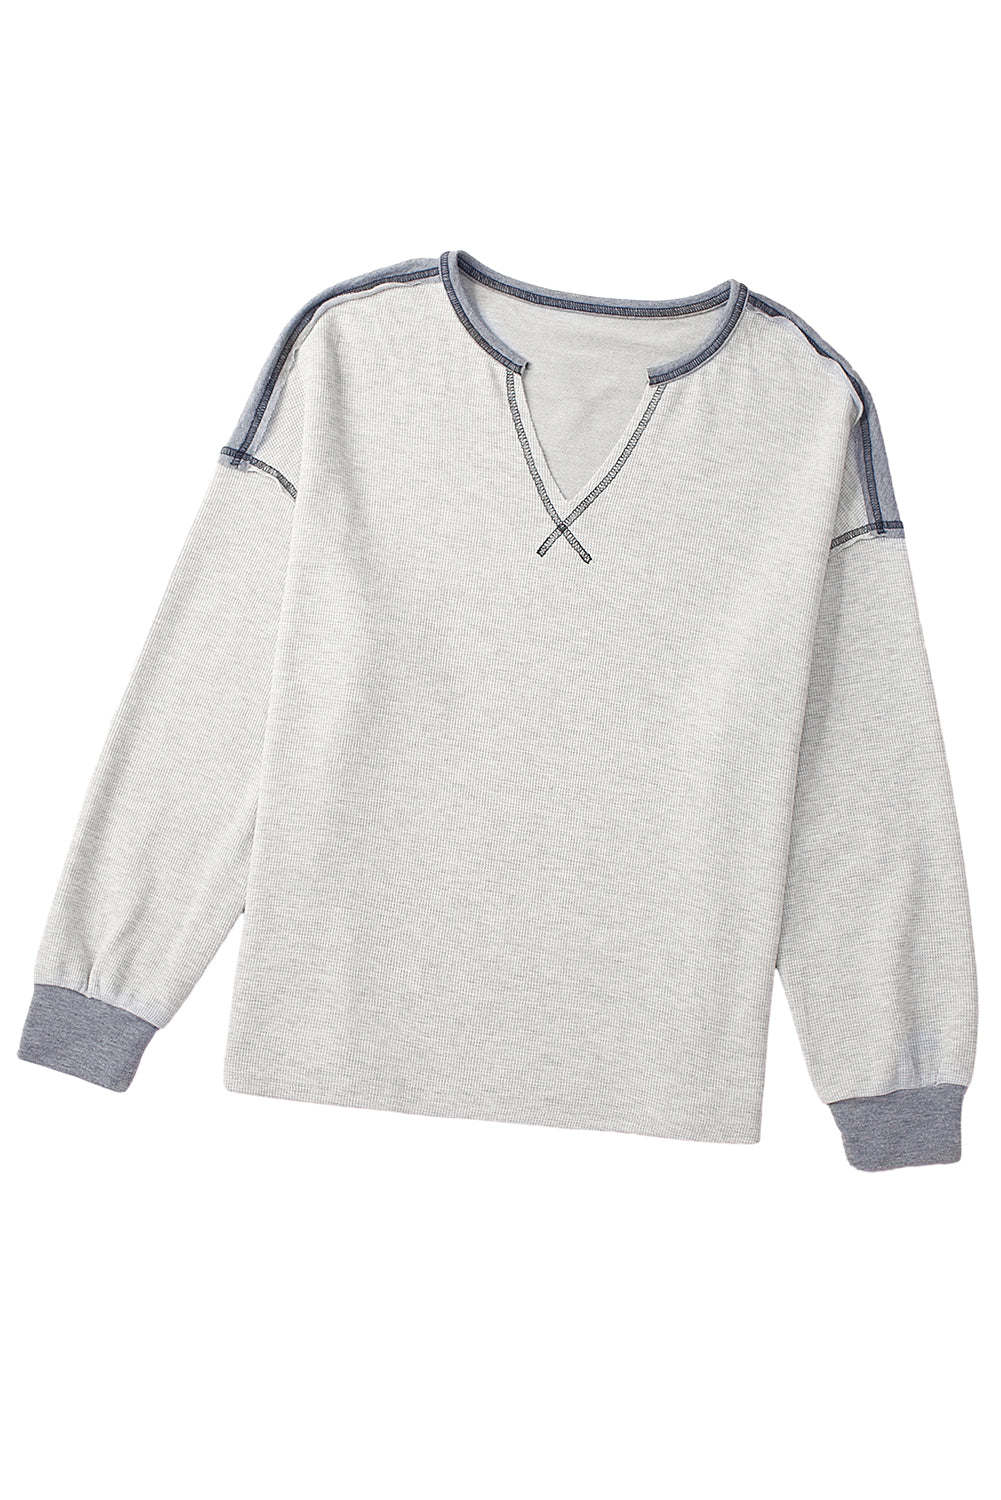 Graues, geripptes Patchwork-Sweatshirt mit freiliegenden Nähten und V-Ausschnitt